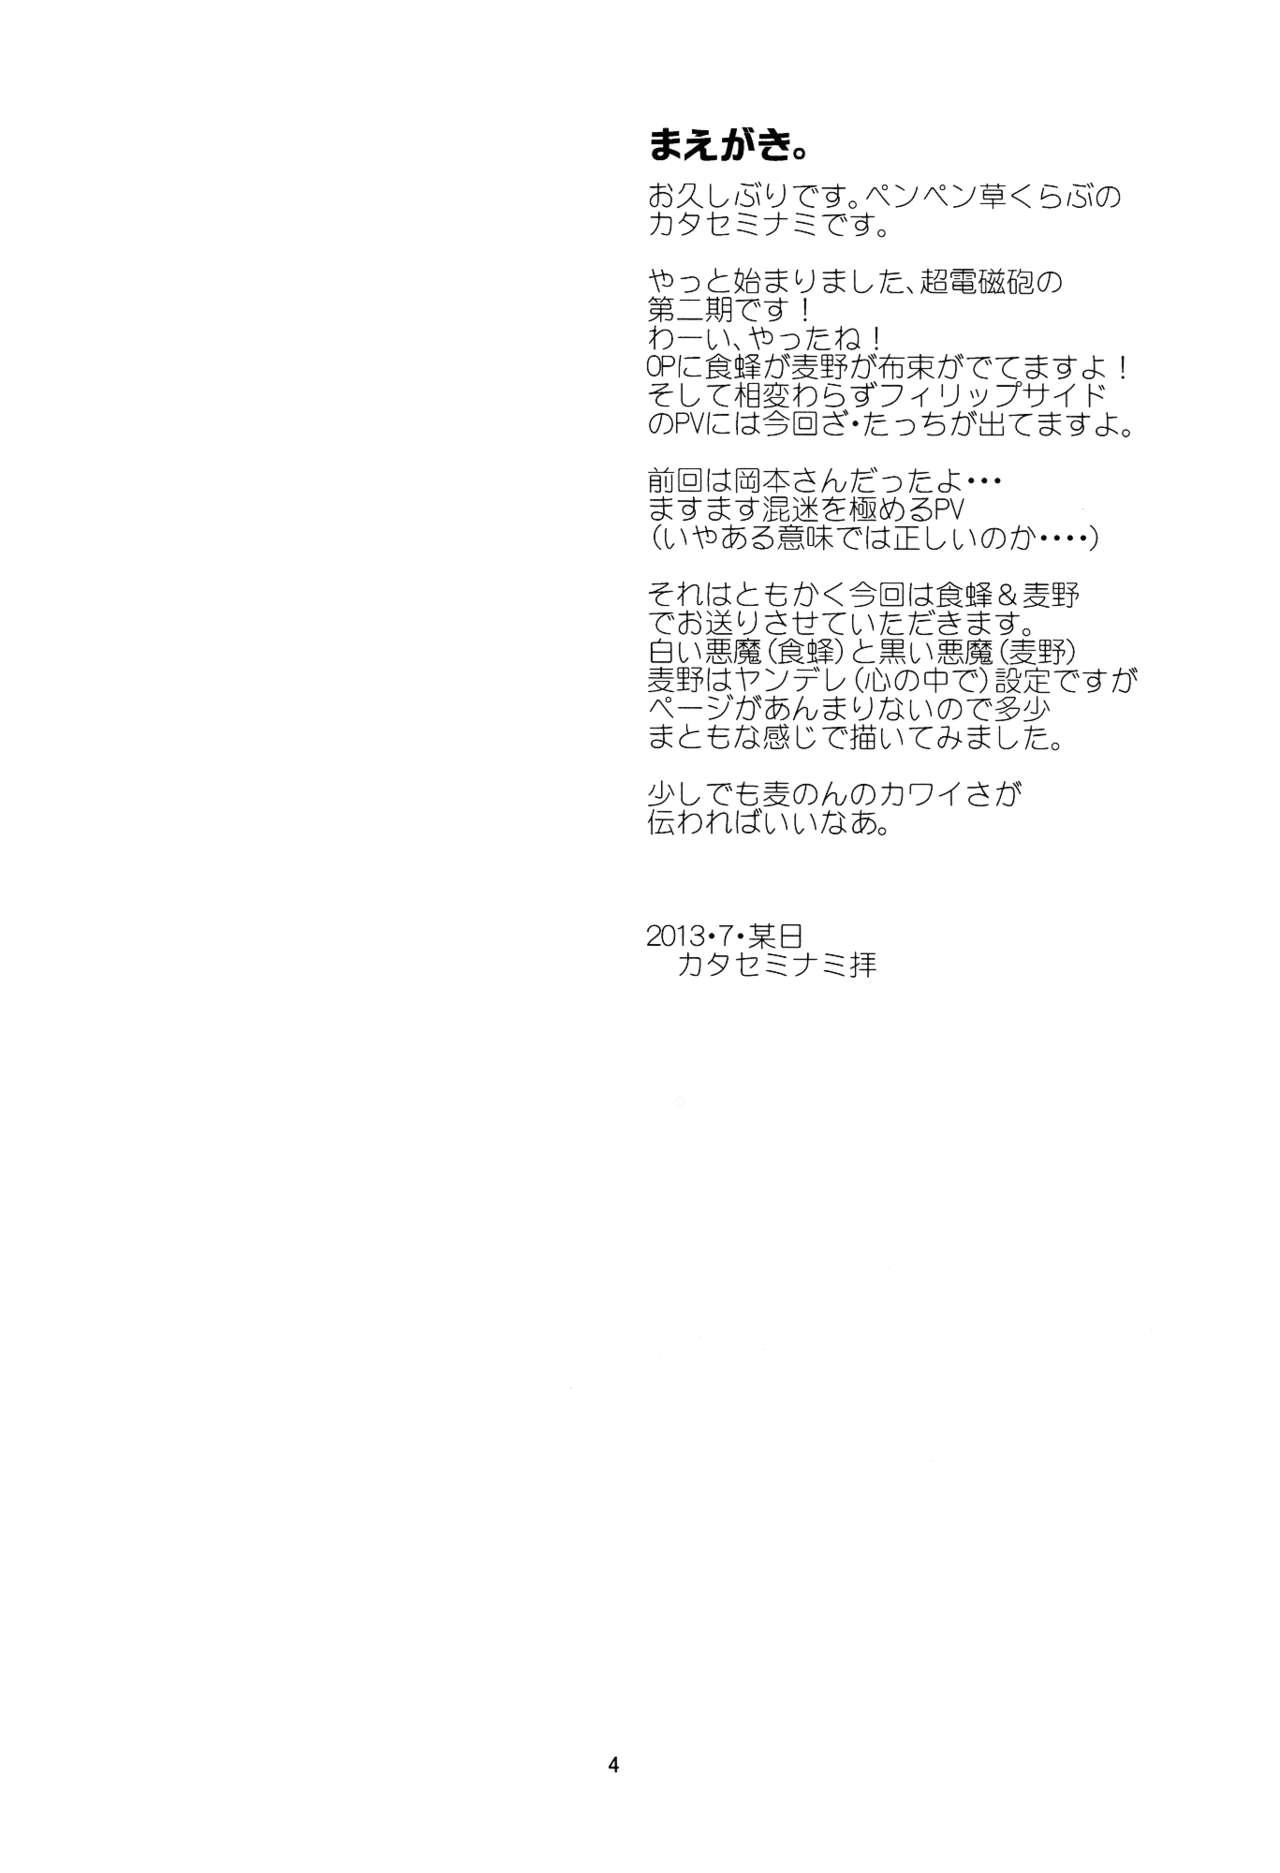 Staxxx Manatsu no Reversible - Toaru kagaku no railgun Toaru majutsu no index Porn Sluts - Page 4